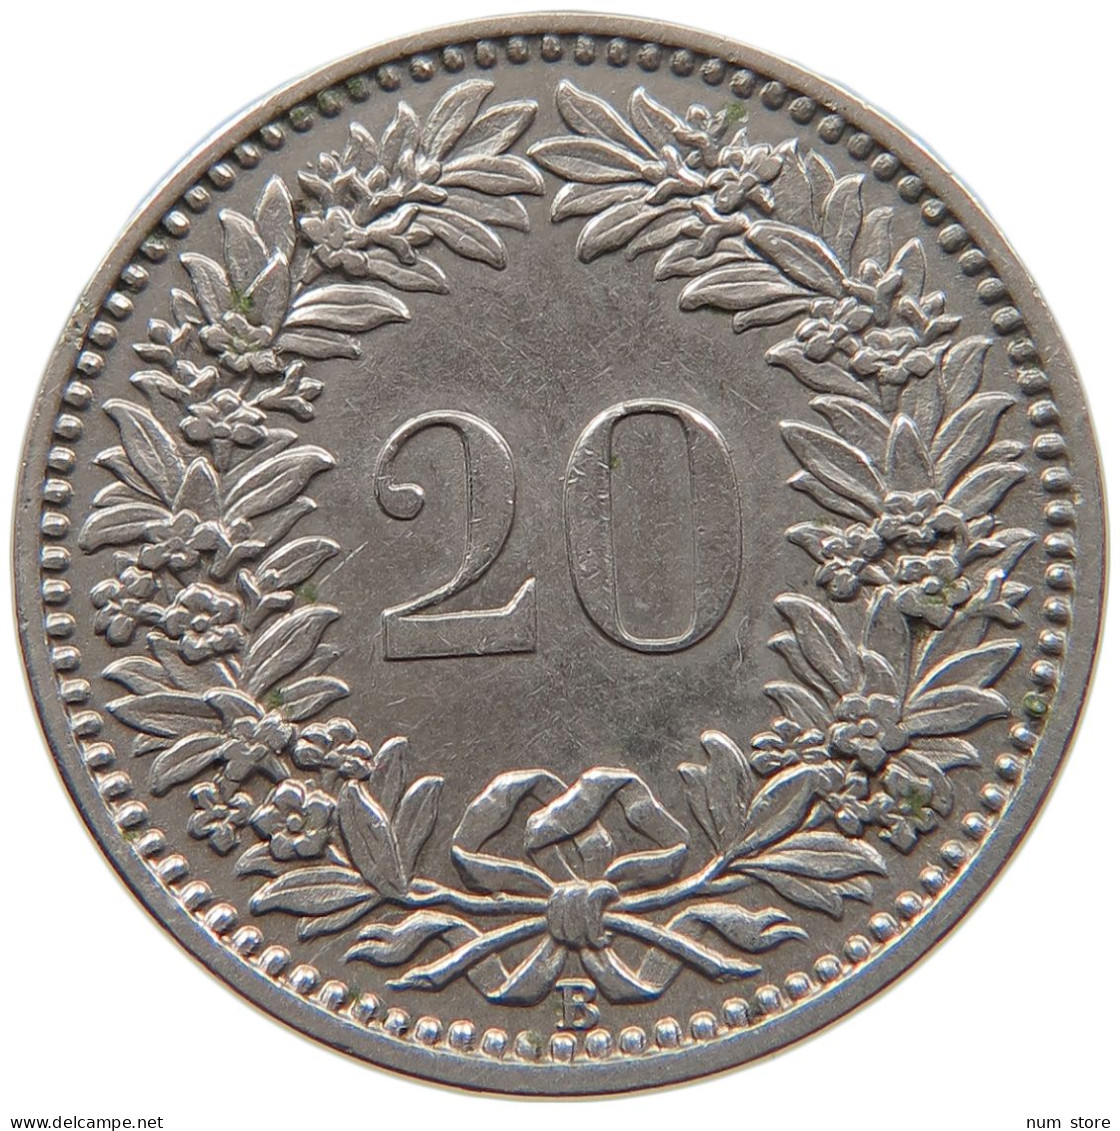 SWITZERLAND 20 RAPPEN 1903 #s100 0335 - 20 Centimes / Rappen